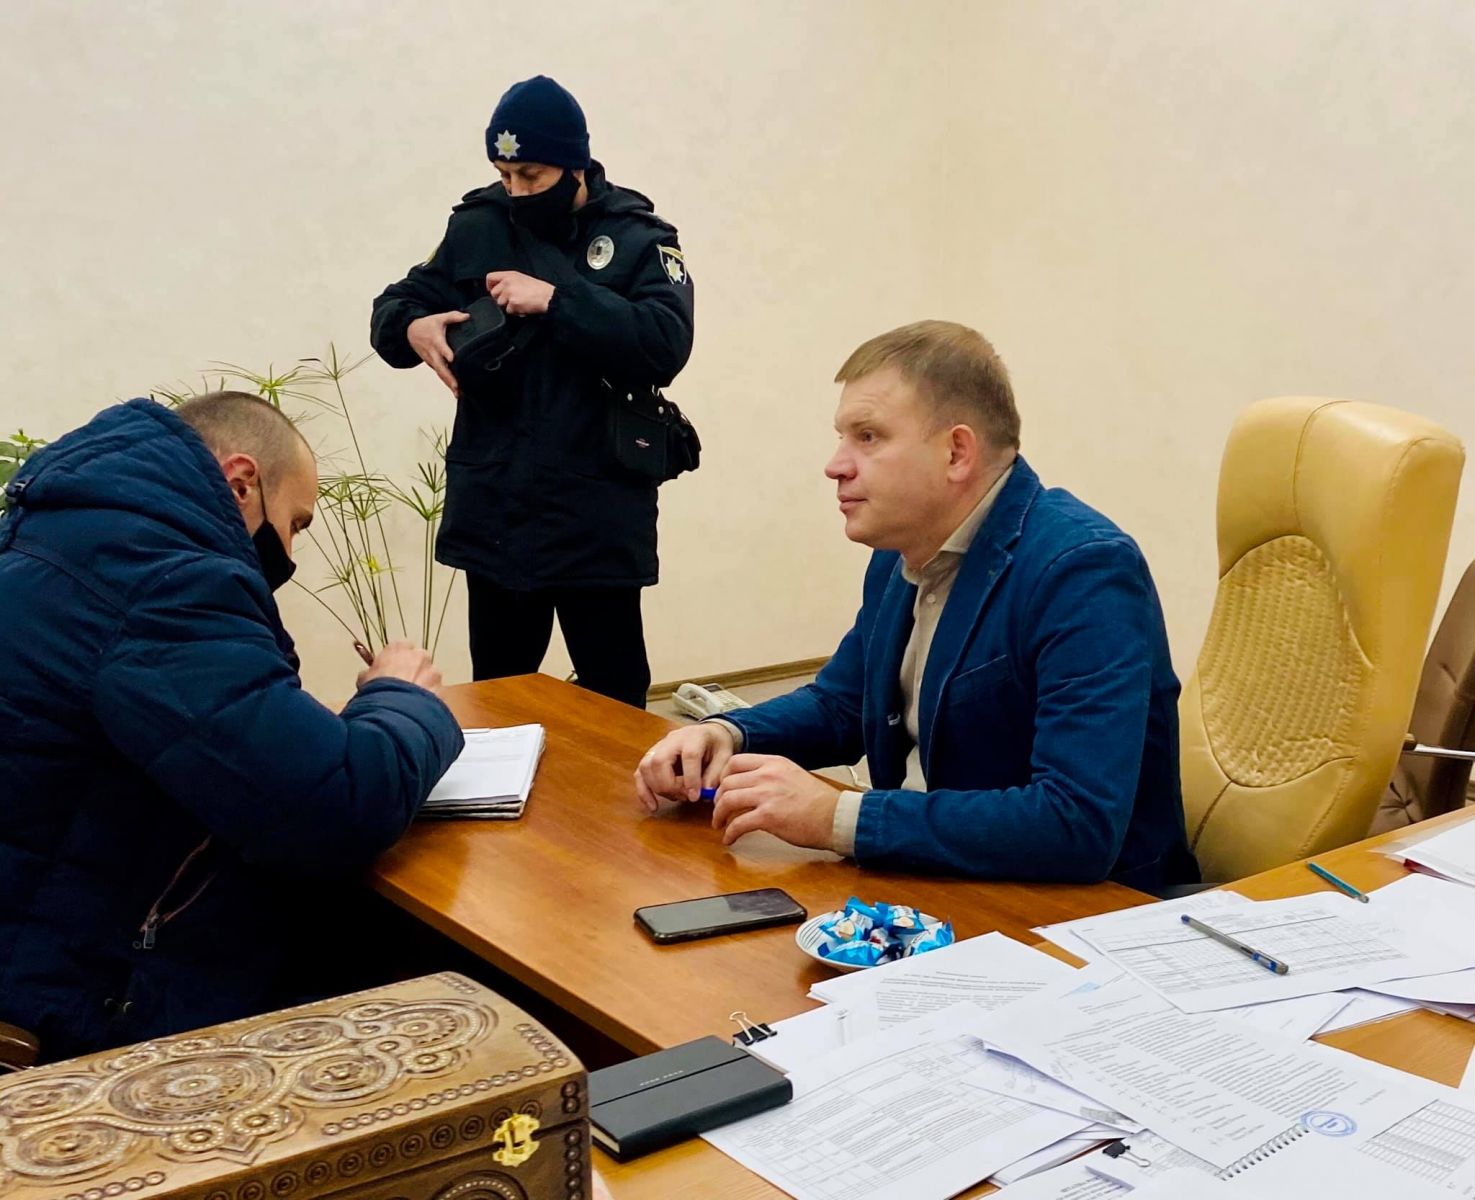 Віталій Граждан виявив у своєму кабінеті приховані камери, фото: Віталій Граждан